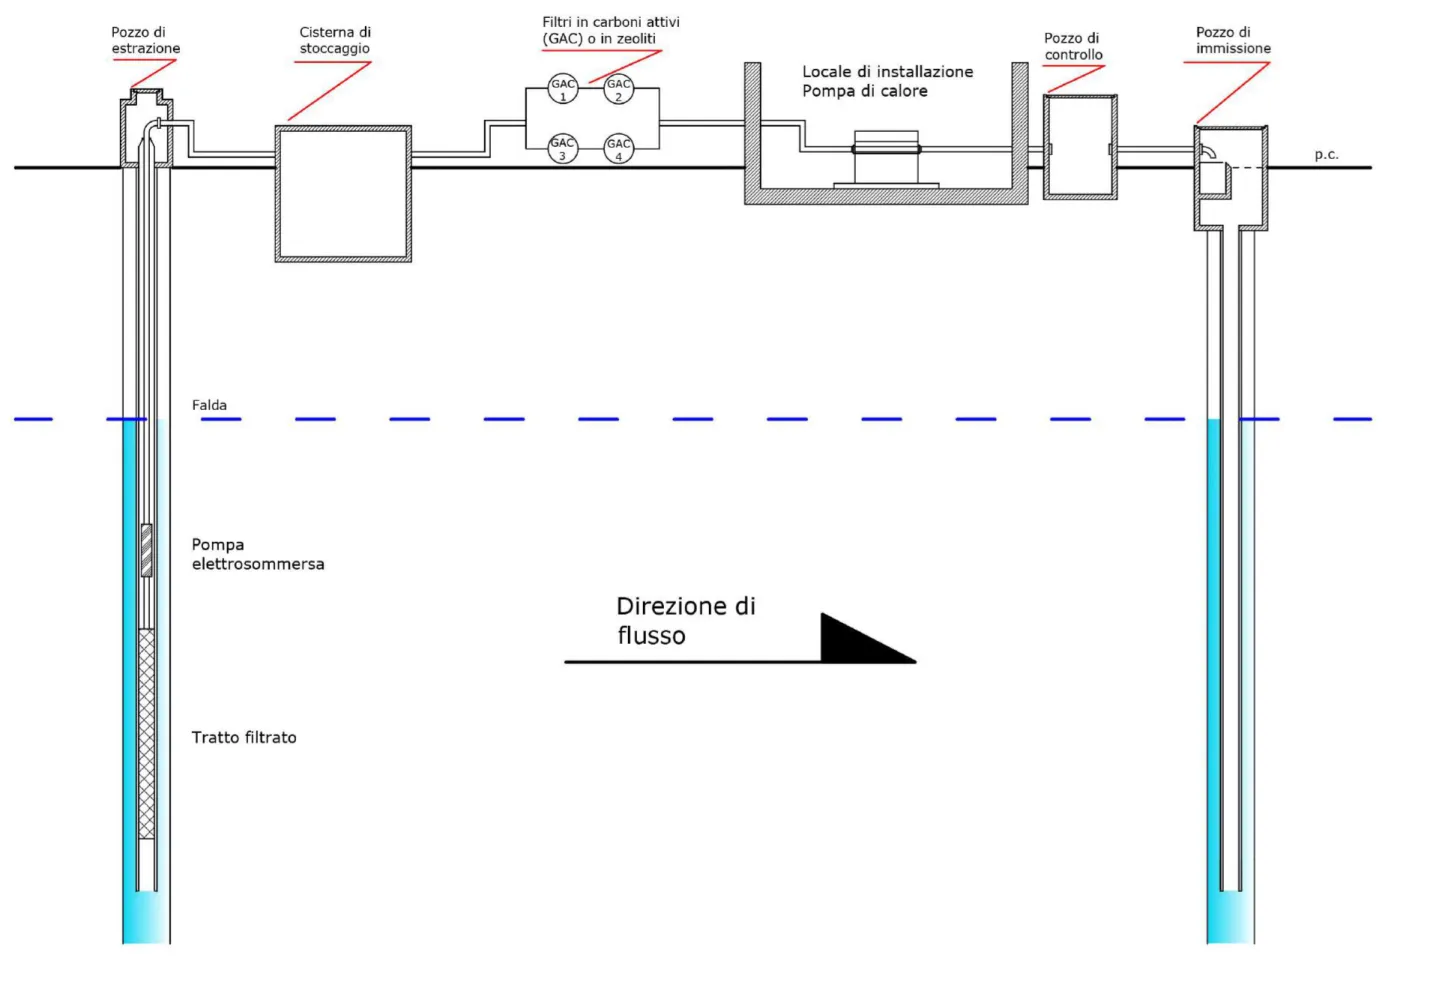 Figura  3.1:  schema  semplificato  di  un  impianto  di  bonifica  Pump  and  Treat  accoppiato  ad  un  impianto  di  climatizzazione  geotermico  a  bassa  entalpia  di  tipo  open-loop  (impianto integrato)